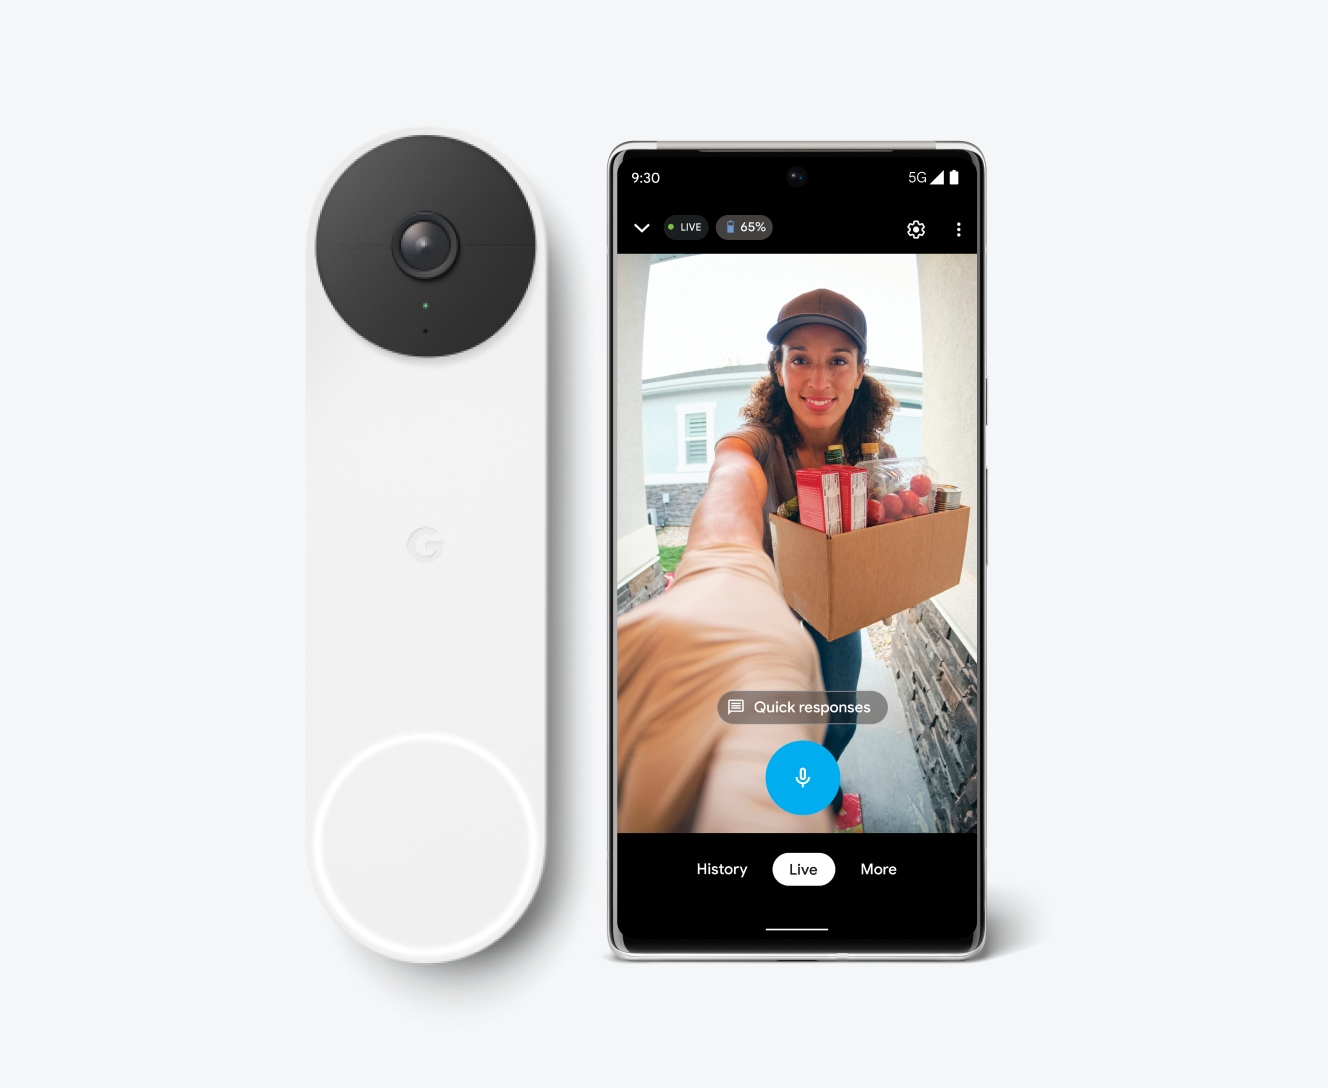 Google doorbell security camera